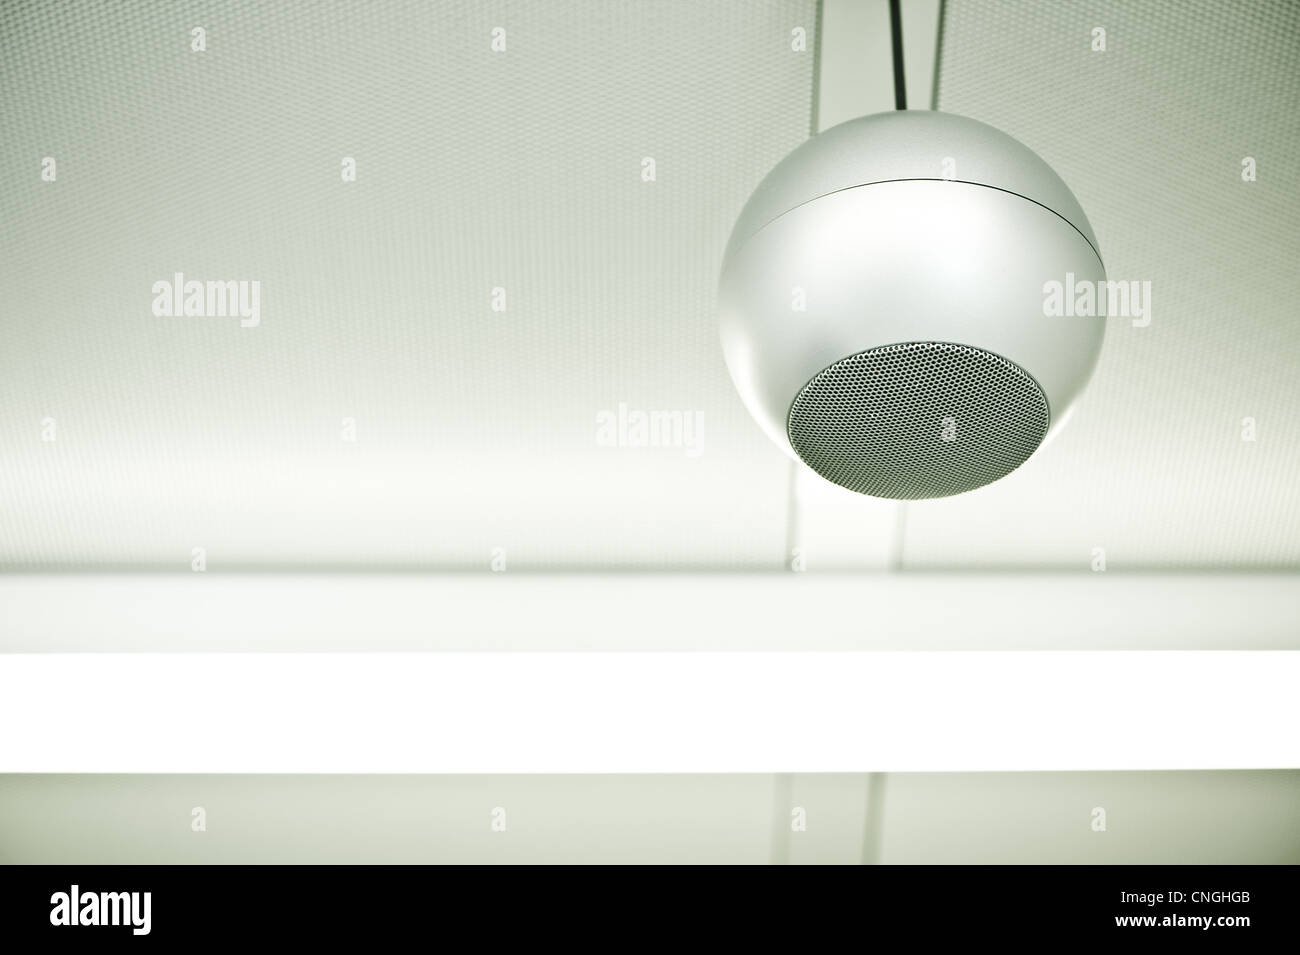 Eine einzelne runde Lautsprecher hängt von der Decke in ein steriles,  weißes Zimmer Stockfotografie - Alamy